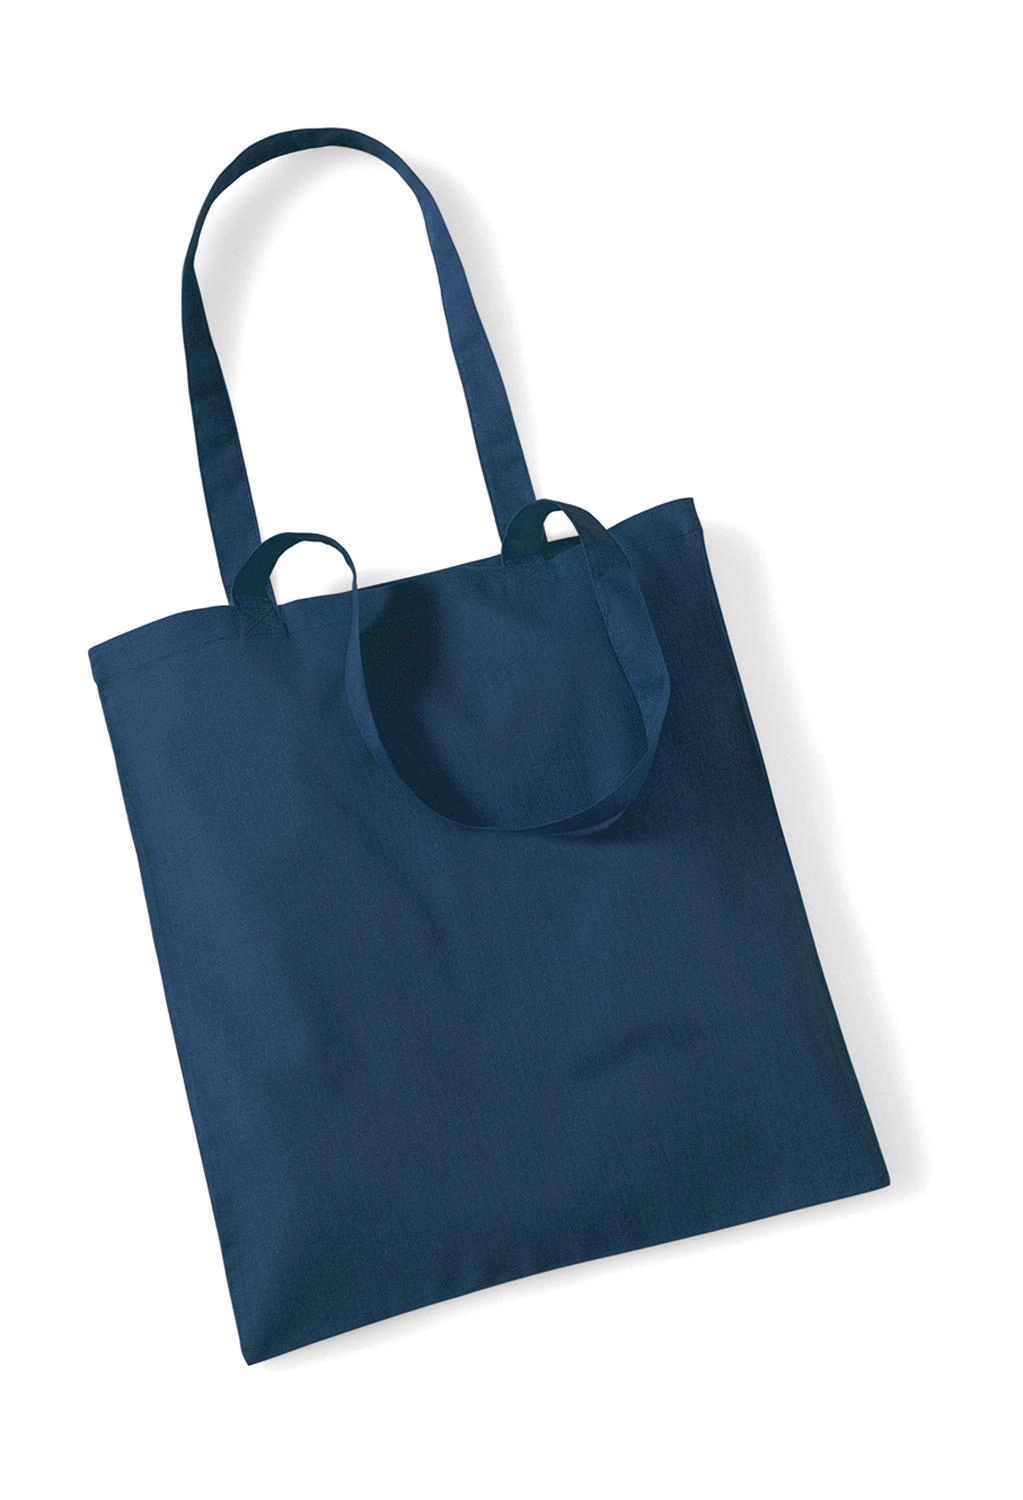 Bag for Life - Long Handles zum Besticken und Bedrucken in der Farbe Petrol mit Ihren Logo, Schriftzug oder Motiv.